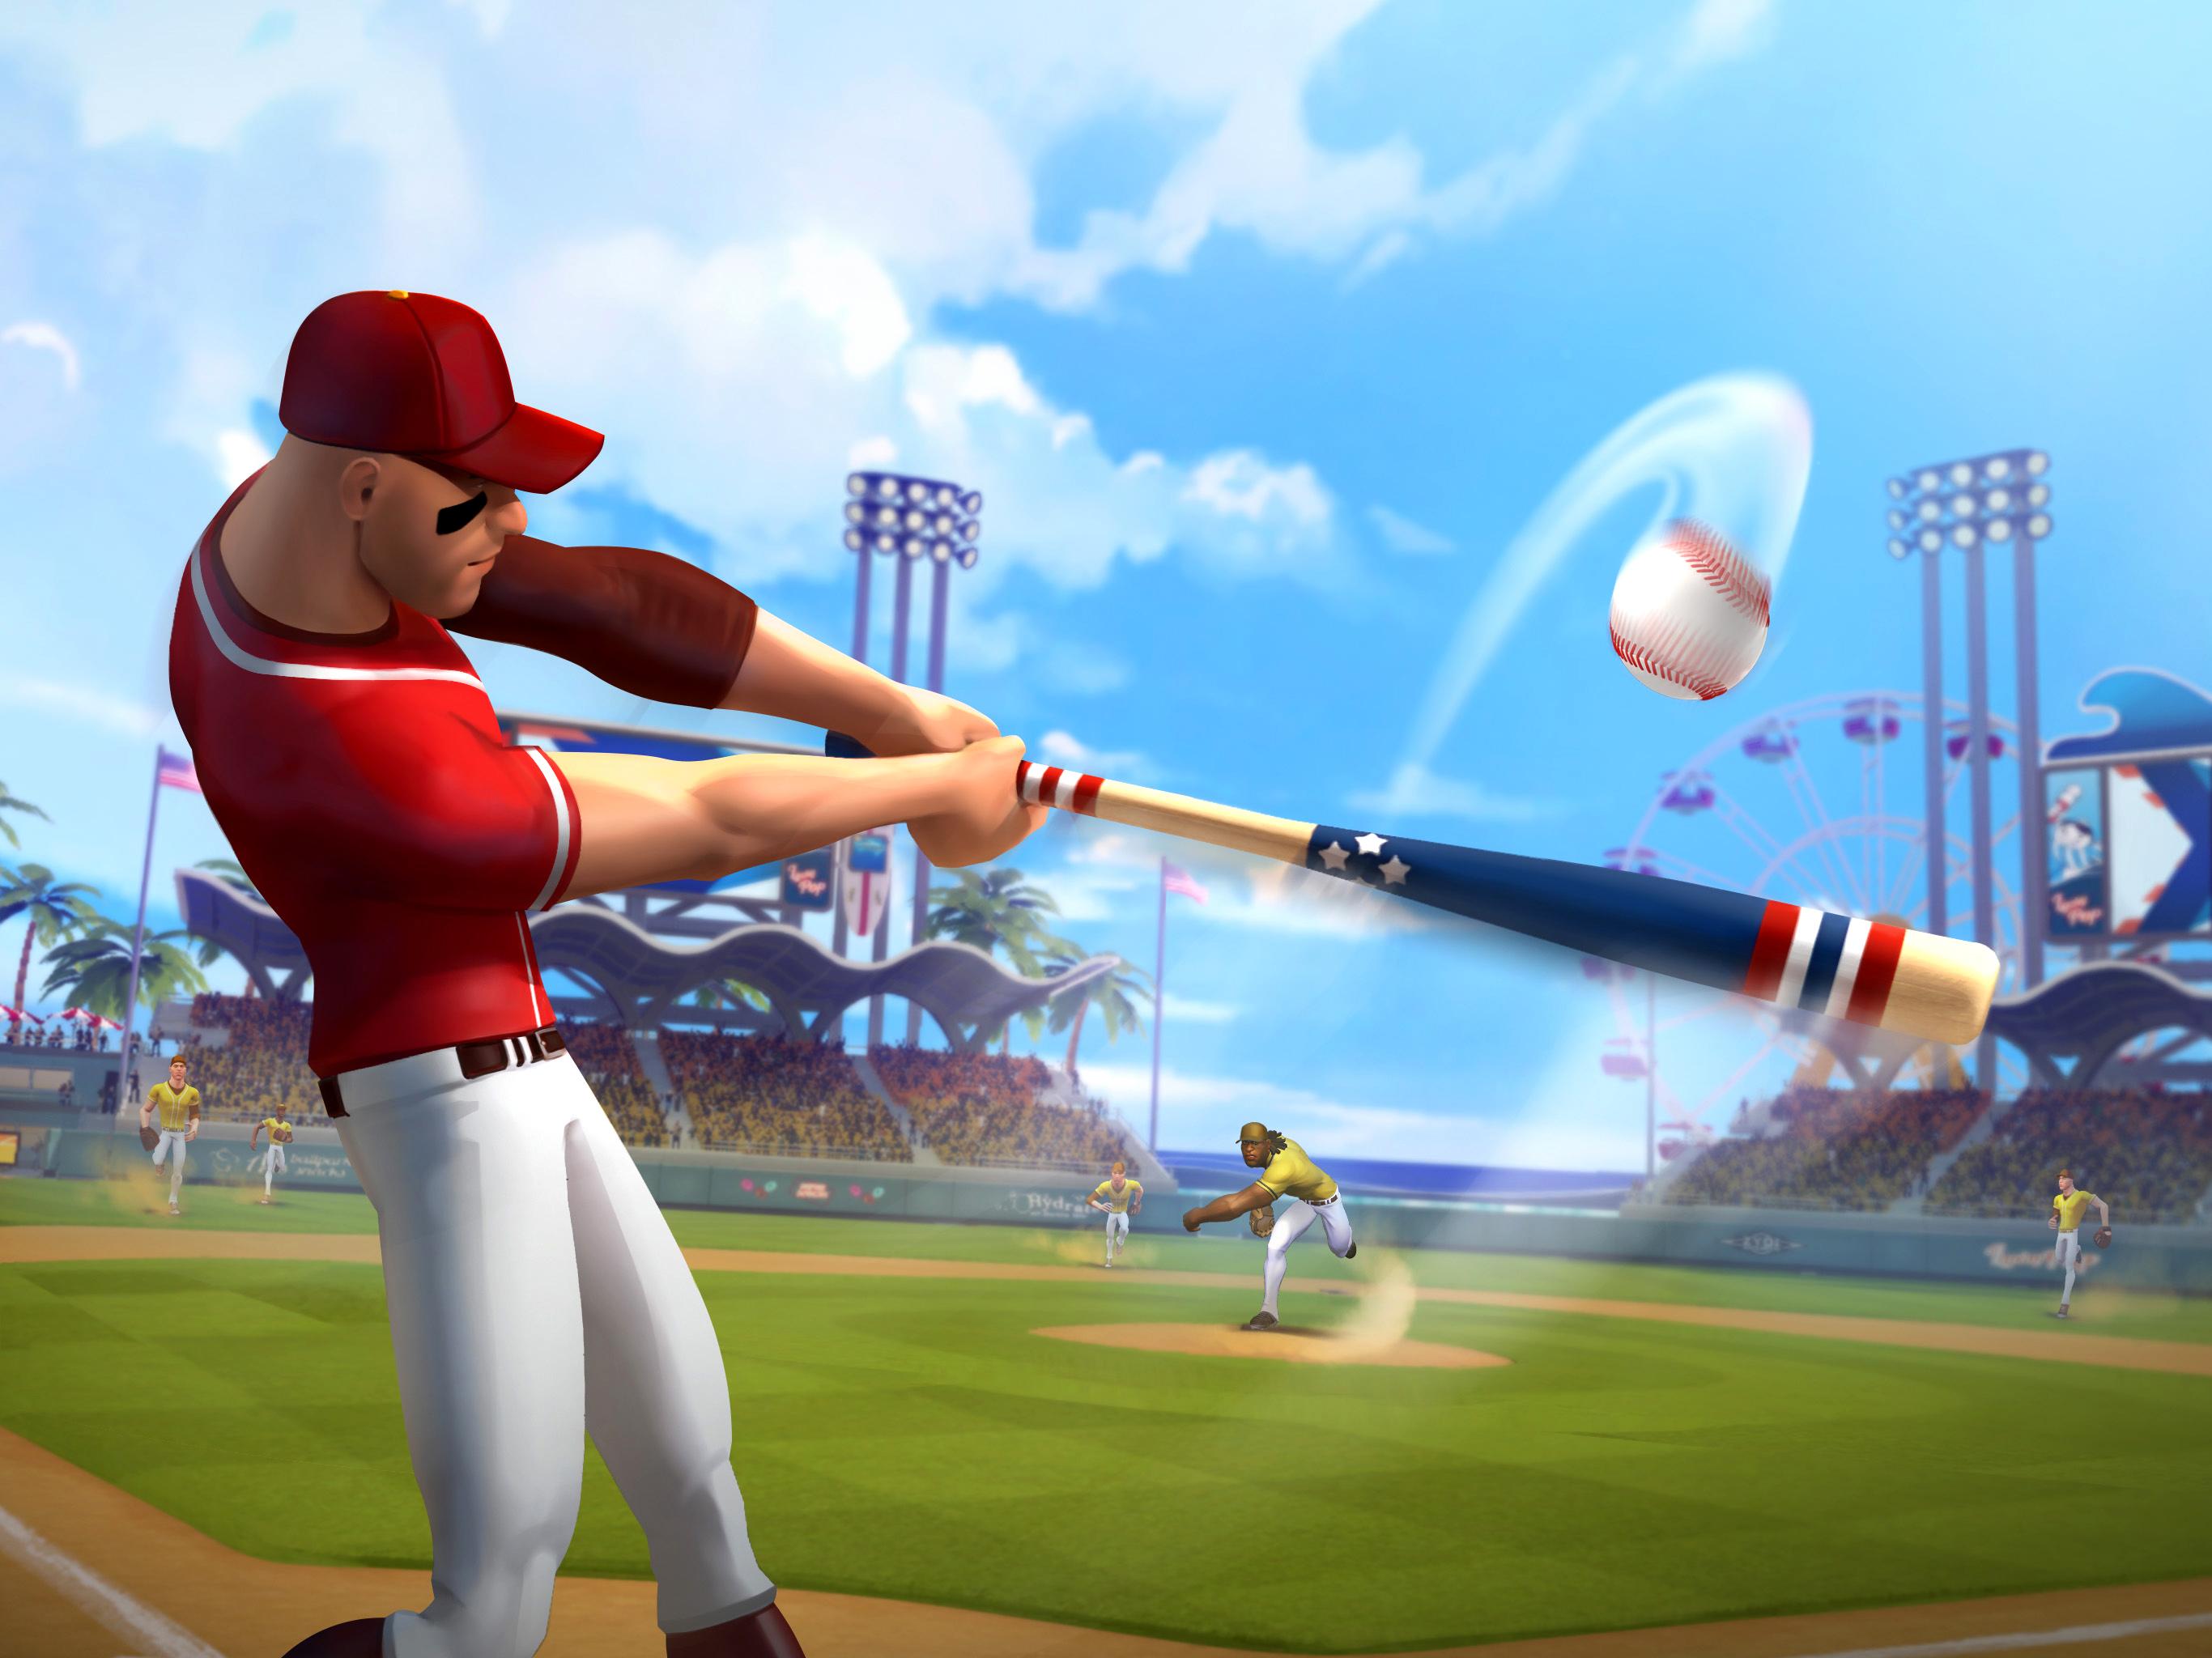 Ballistic Baseball, disponibile il primo gioco di Gameloft su Apple Arcade